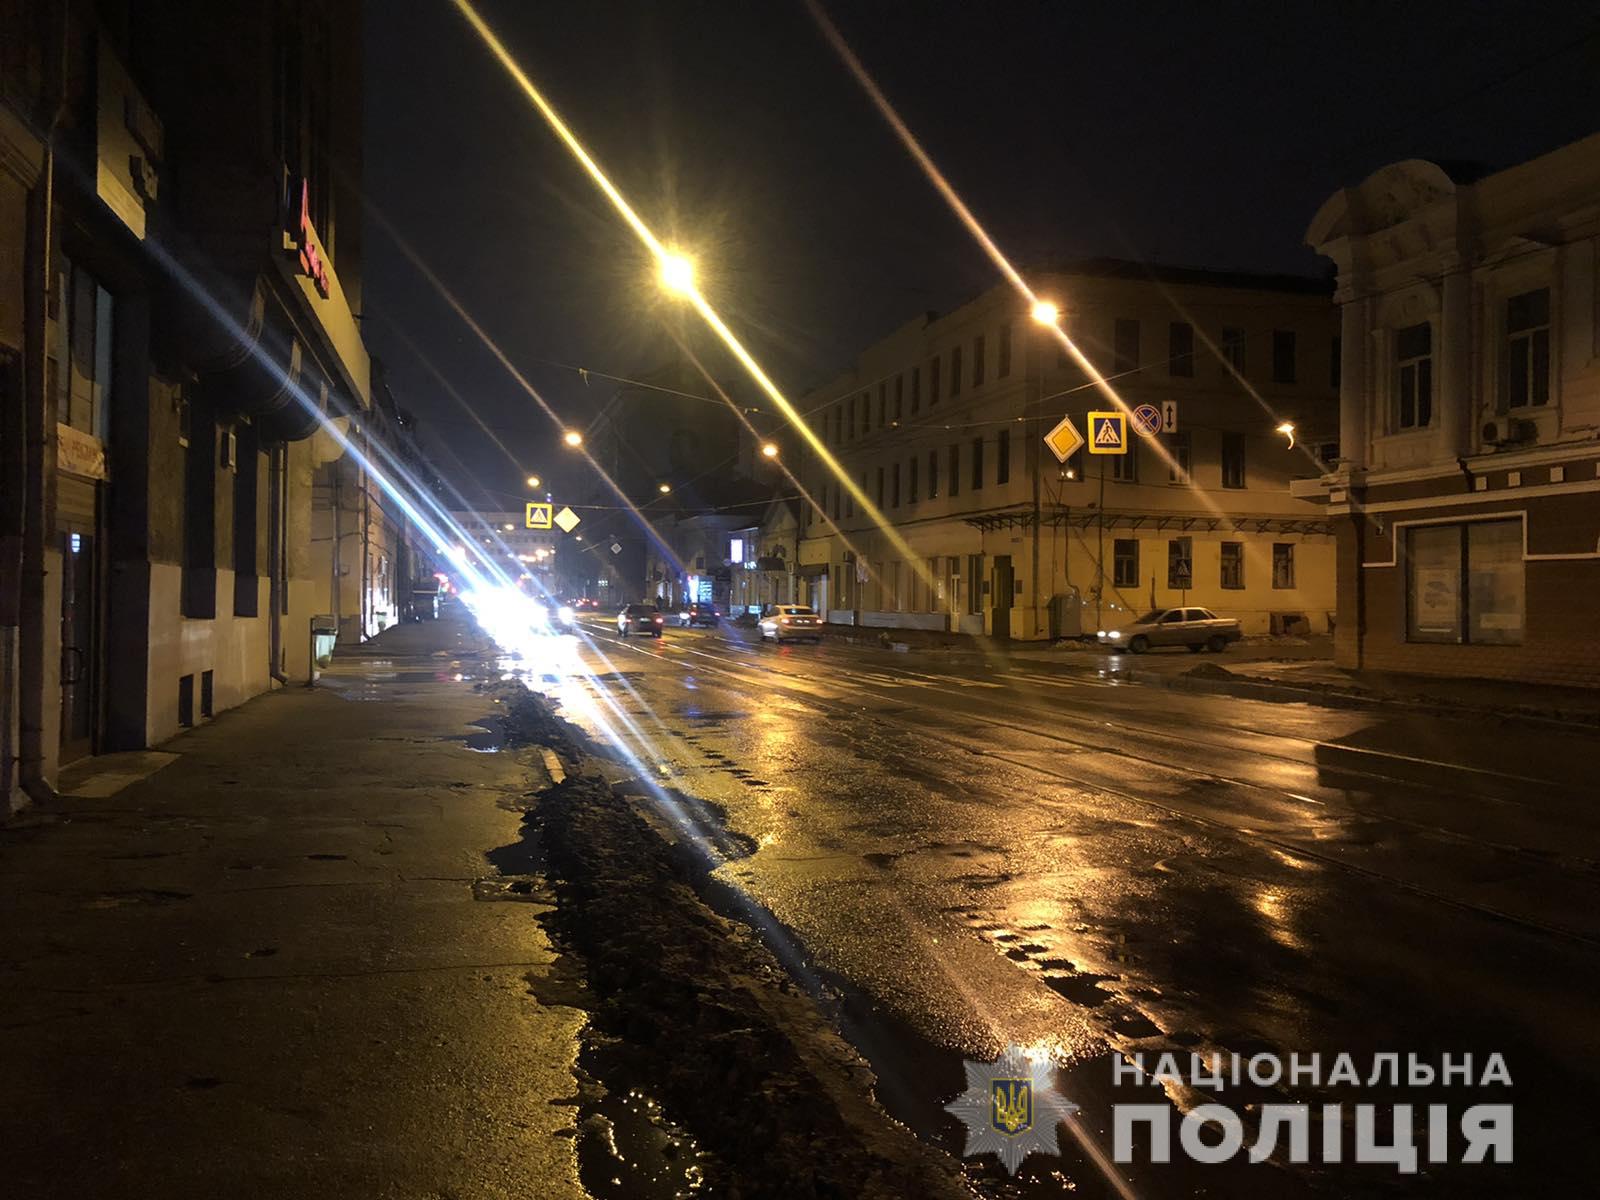 Авария на Полтавском шляхе: полиция ищет свидетелей